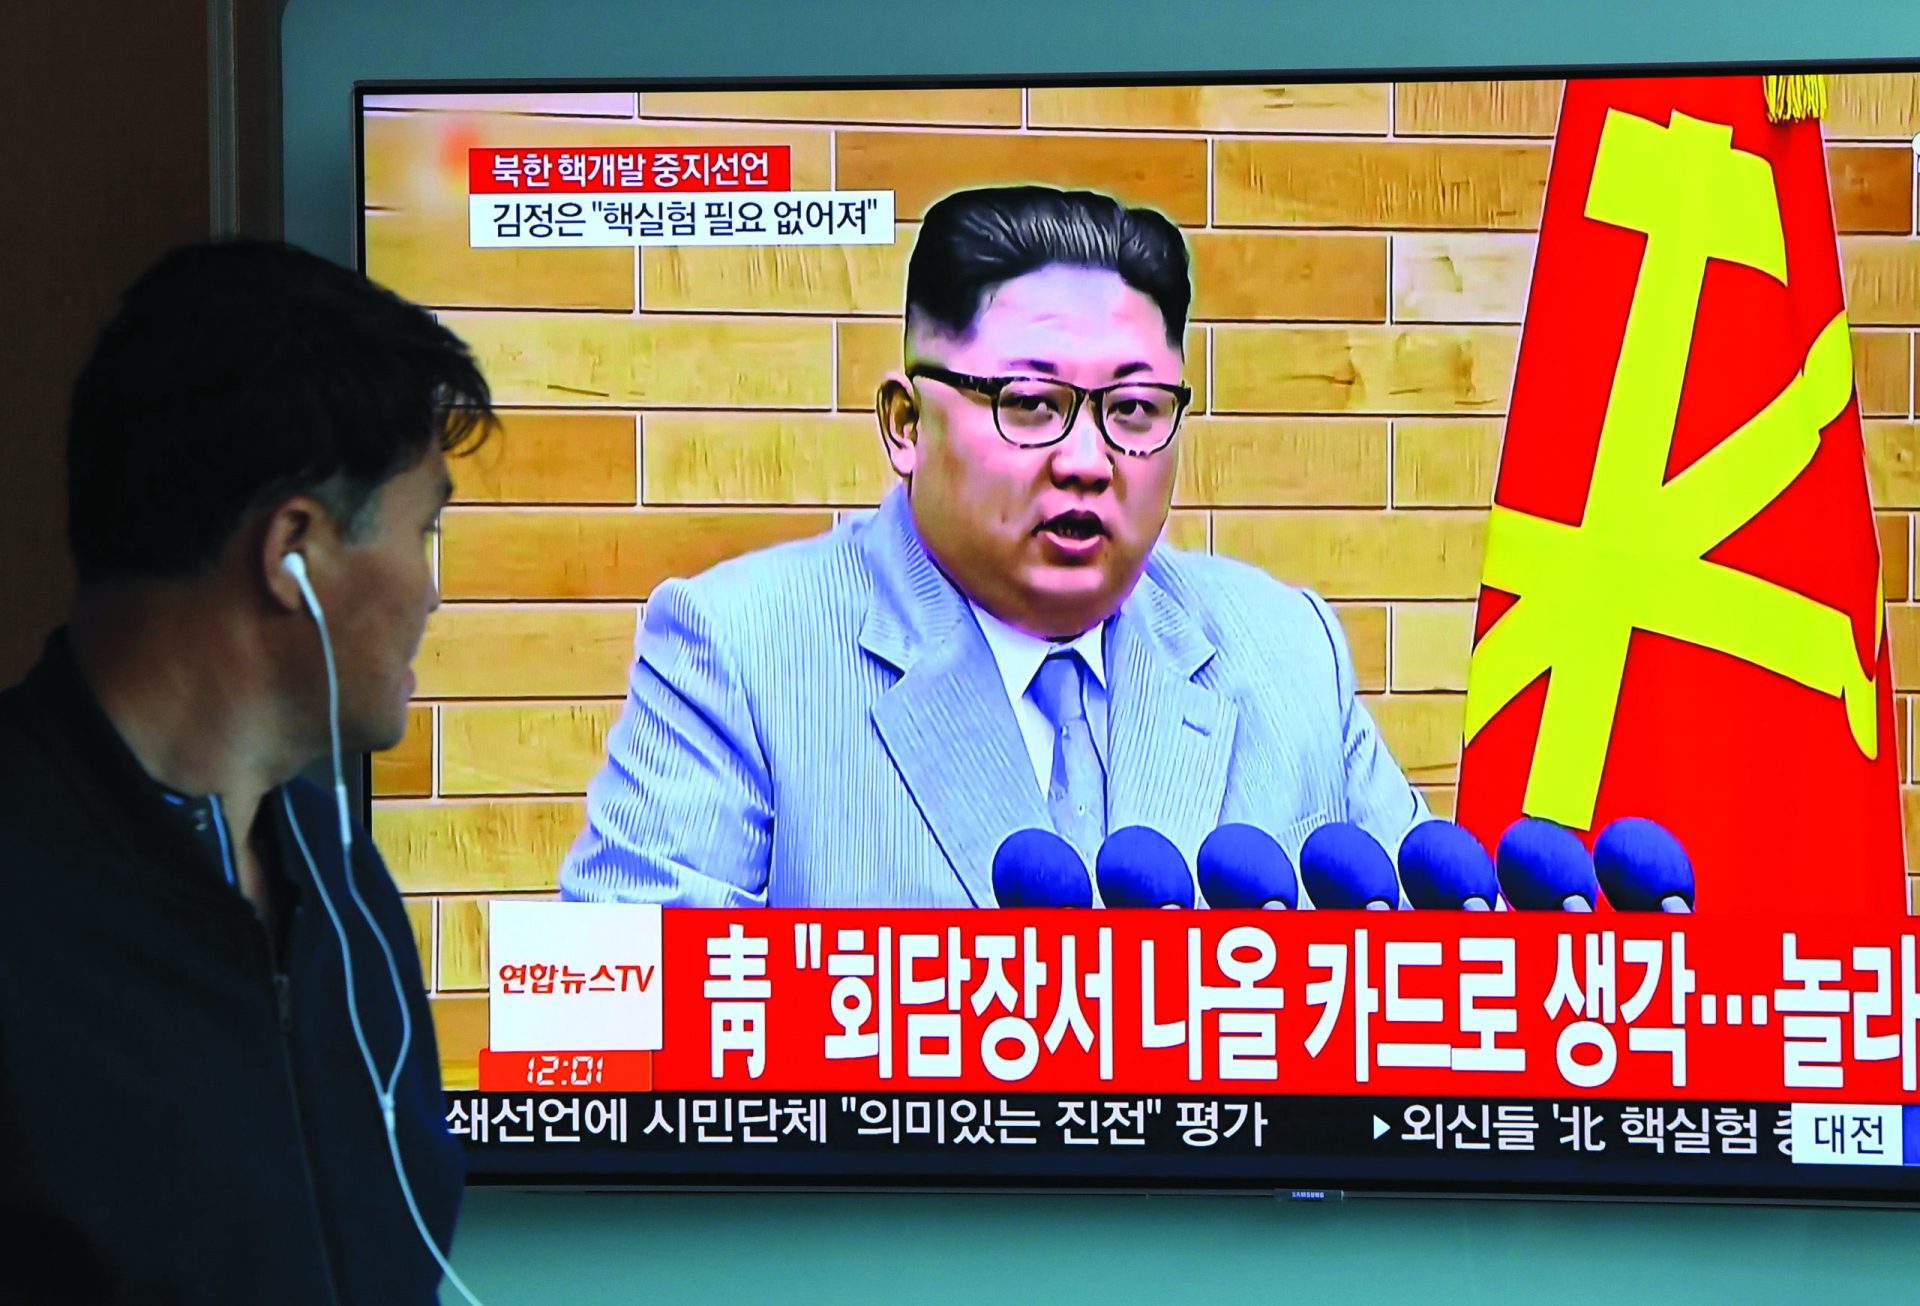 Coreia do Norte. Quanto valem as promessas de Kim?